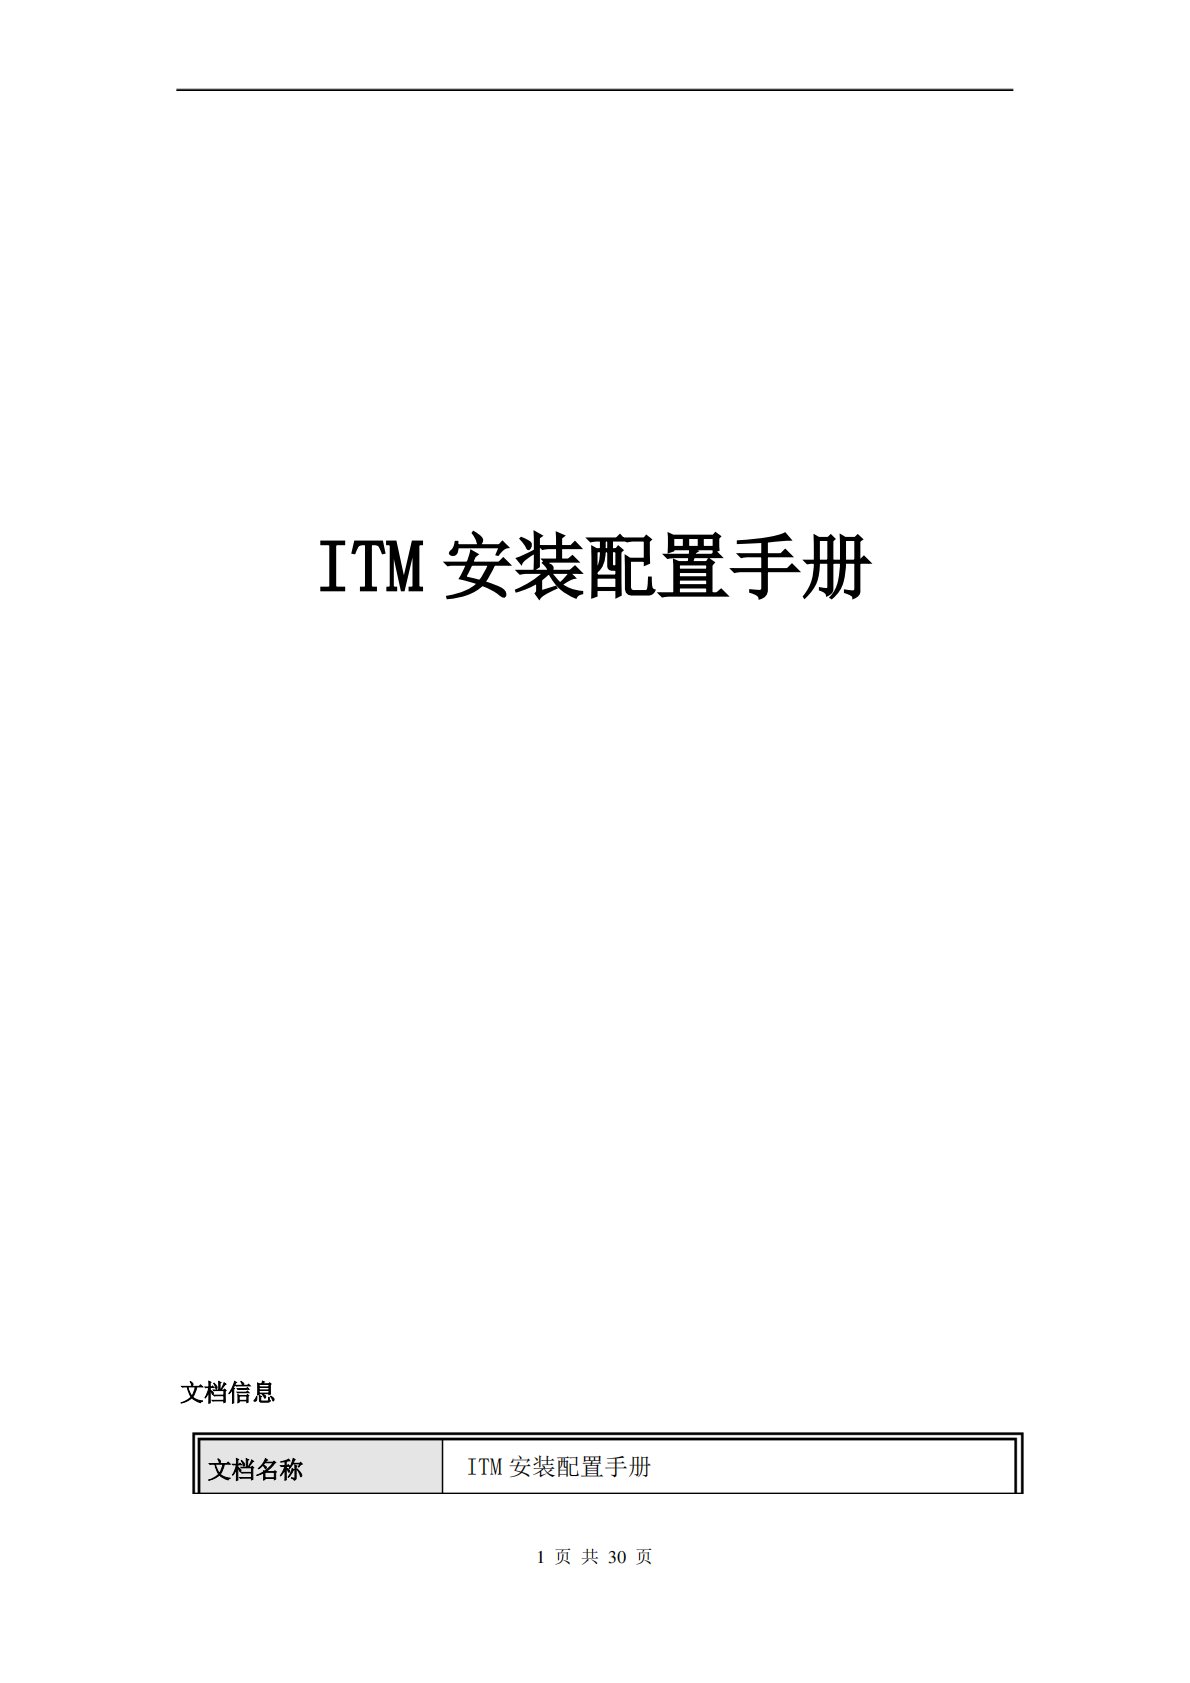 上海现代电梯ITM安装手册